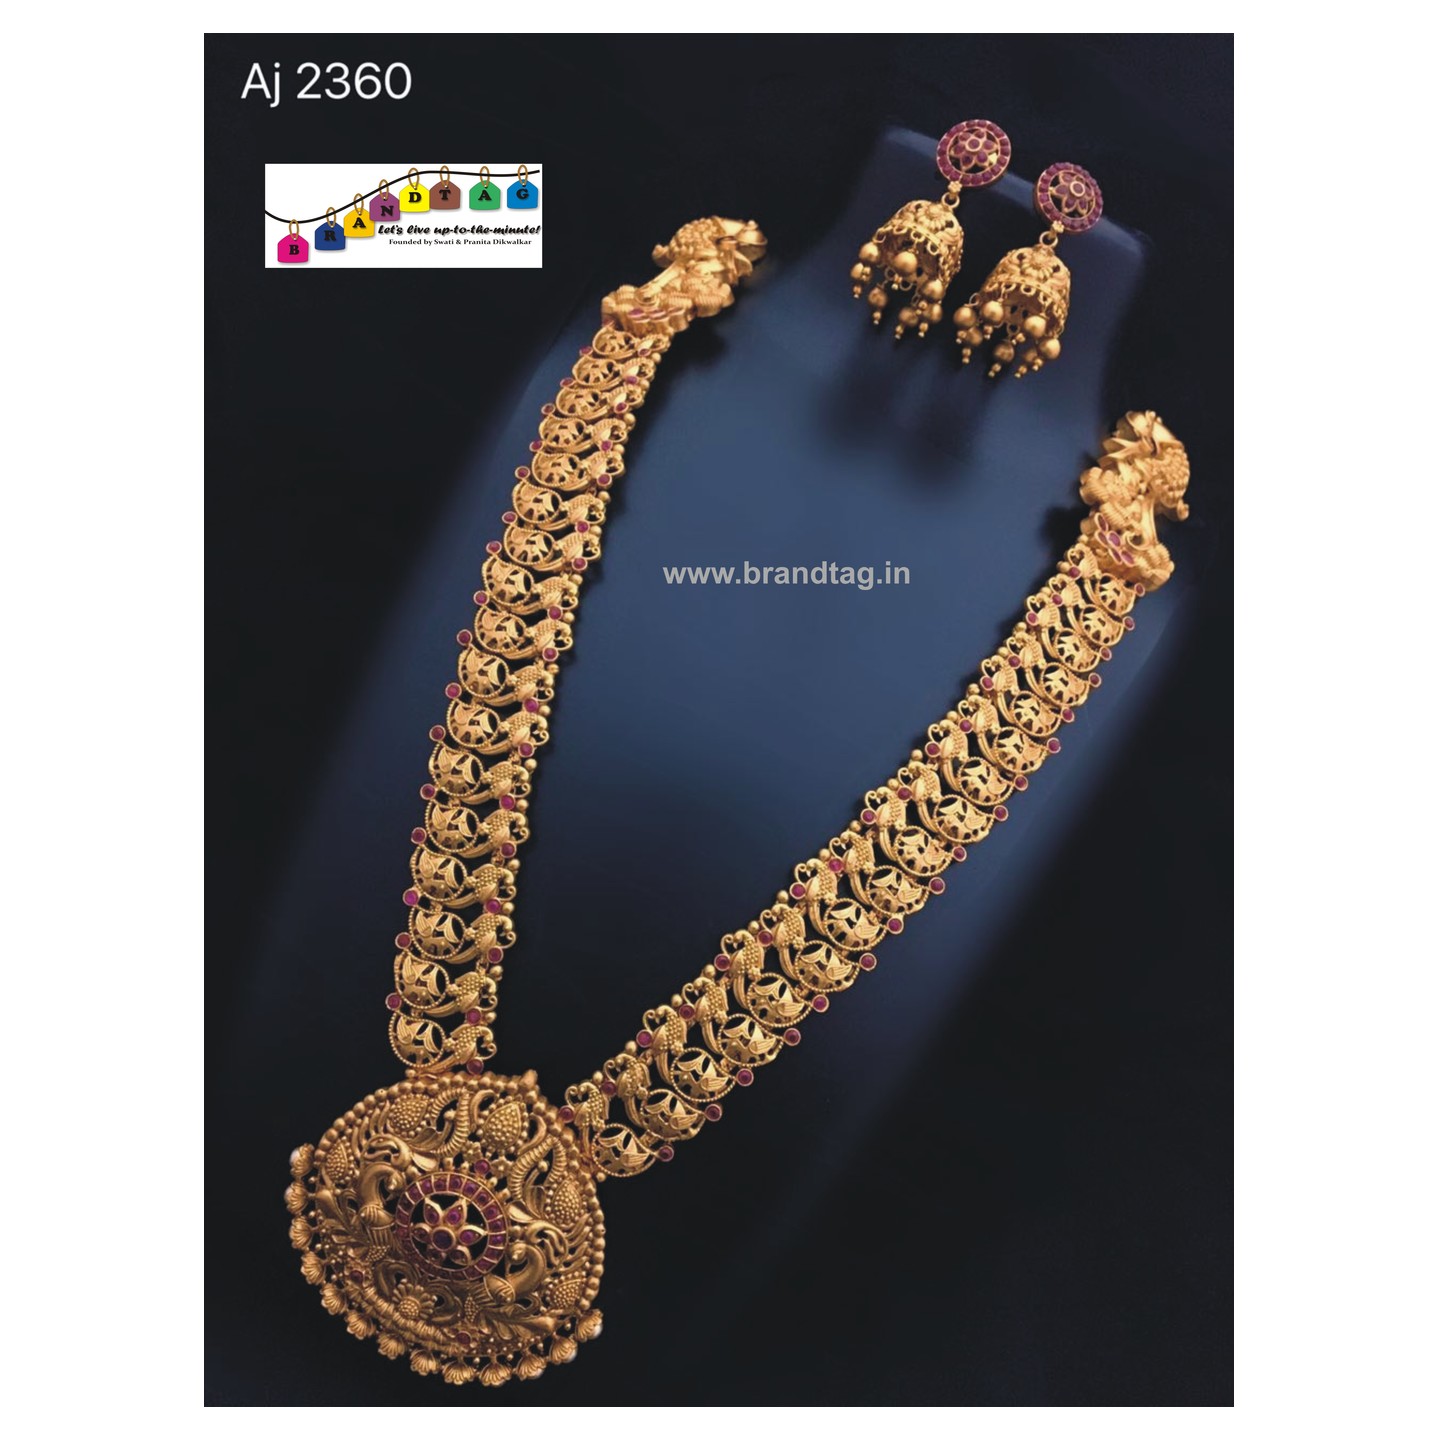 Royal Golden Necklace set!